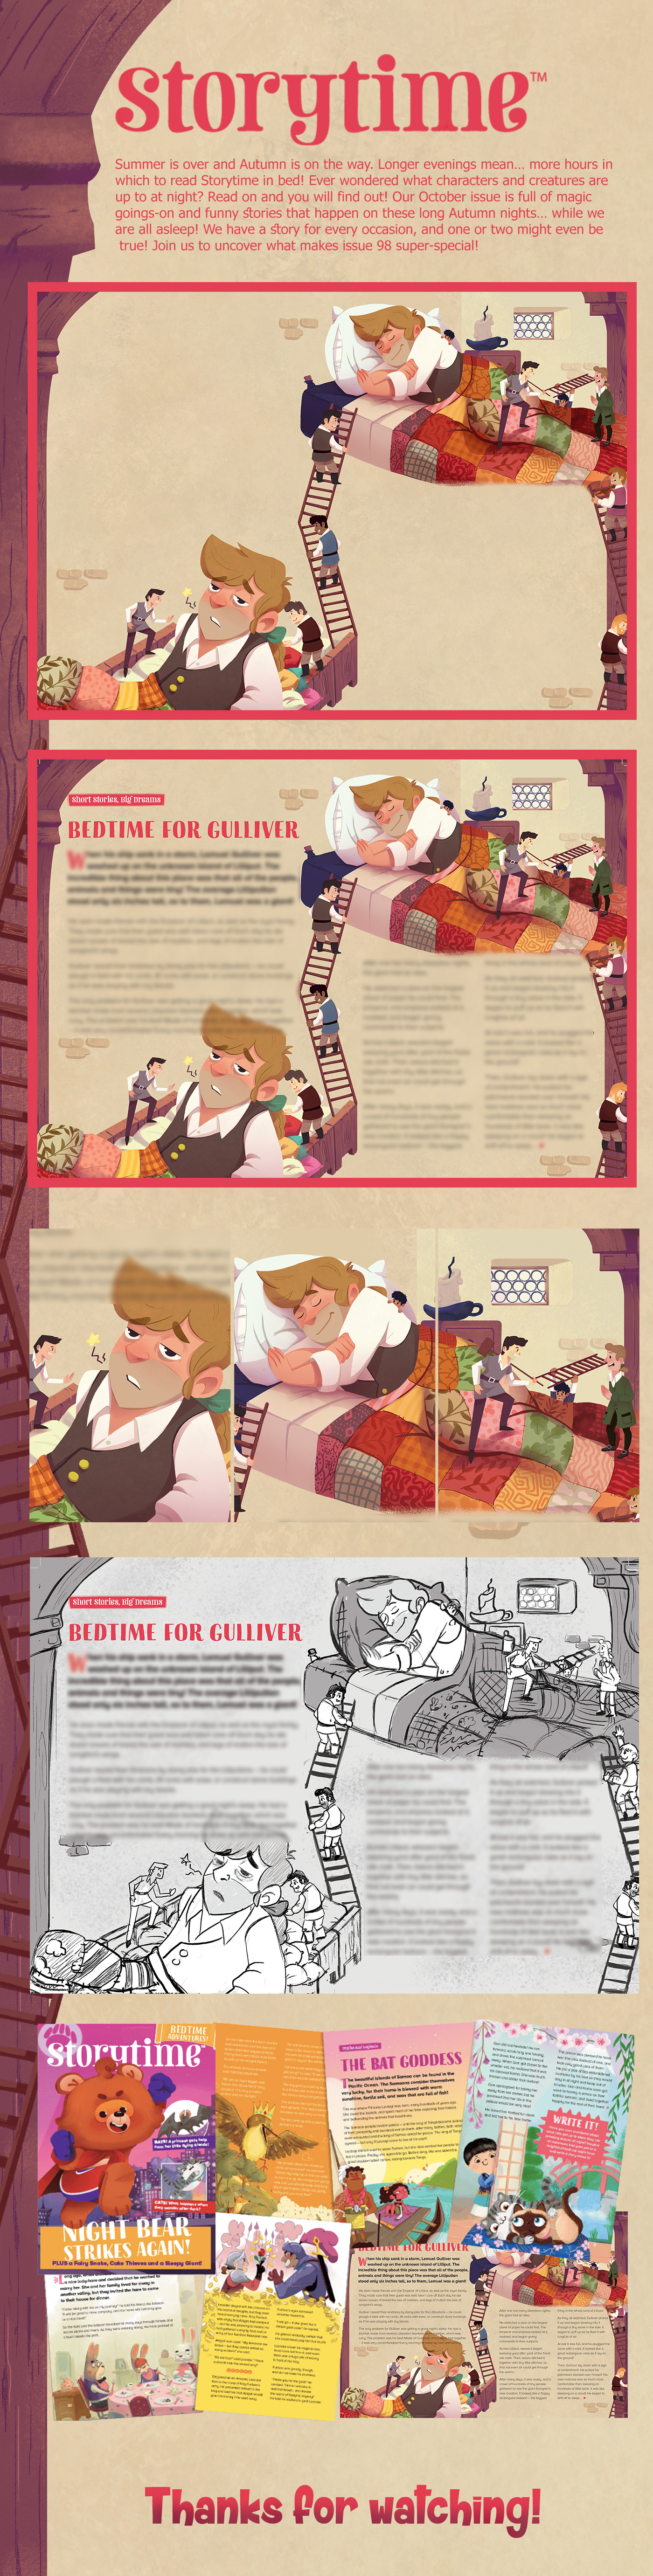 Adobe Photoshop Adobe Portfolio artwork bedtime for gulliver children illustration childrens book Storytime storytimemagazine